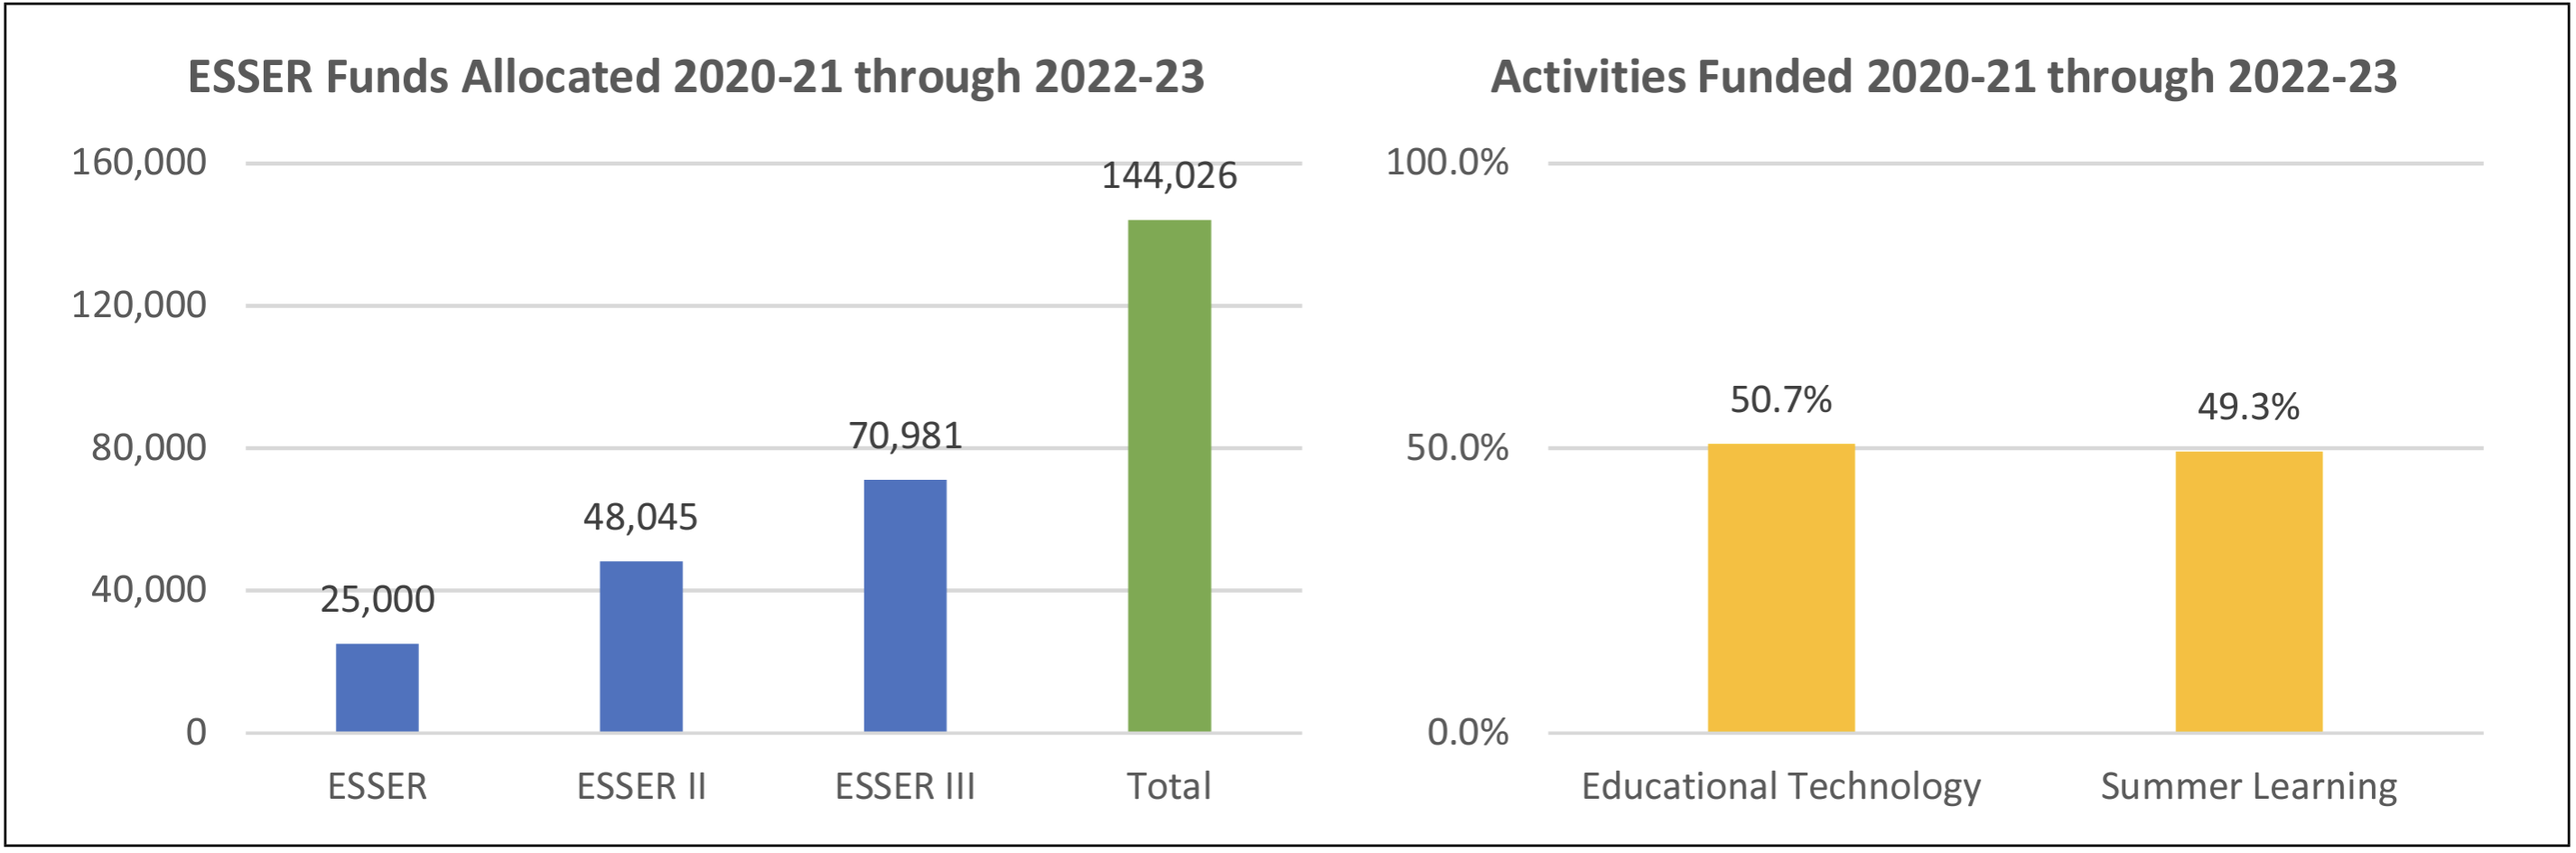 ESSER Funds Allocated 2020-21 through 2022-23